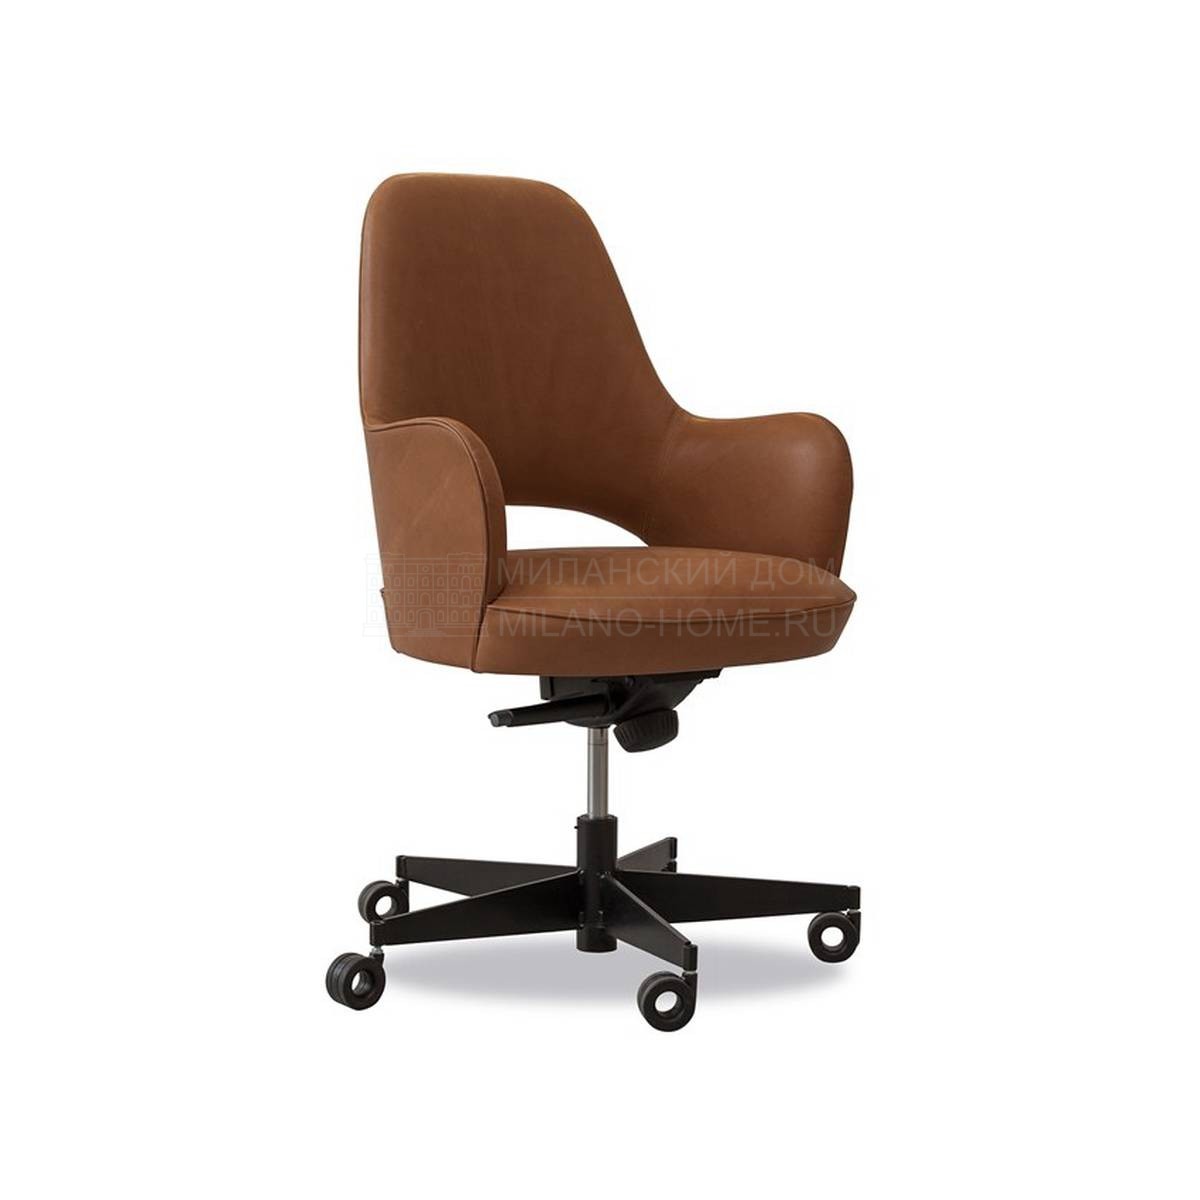 Кожаное кресло Colette office brown из Италии фабрики BAXTER